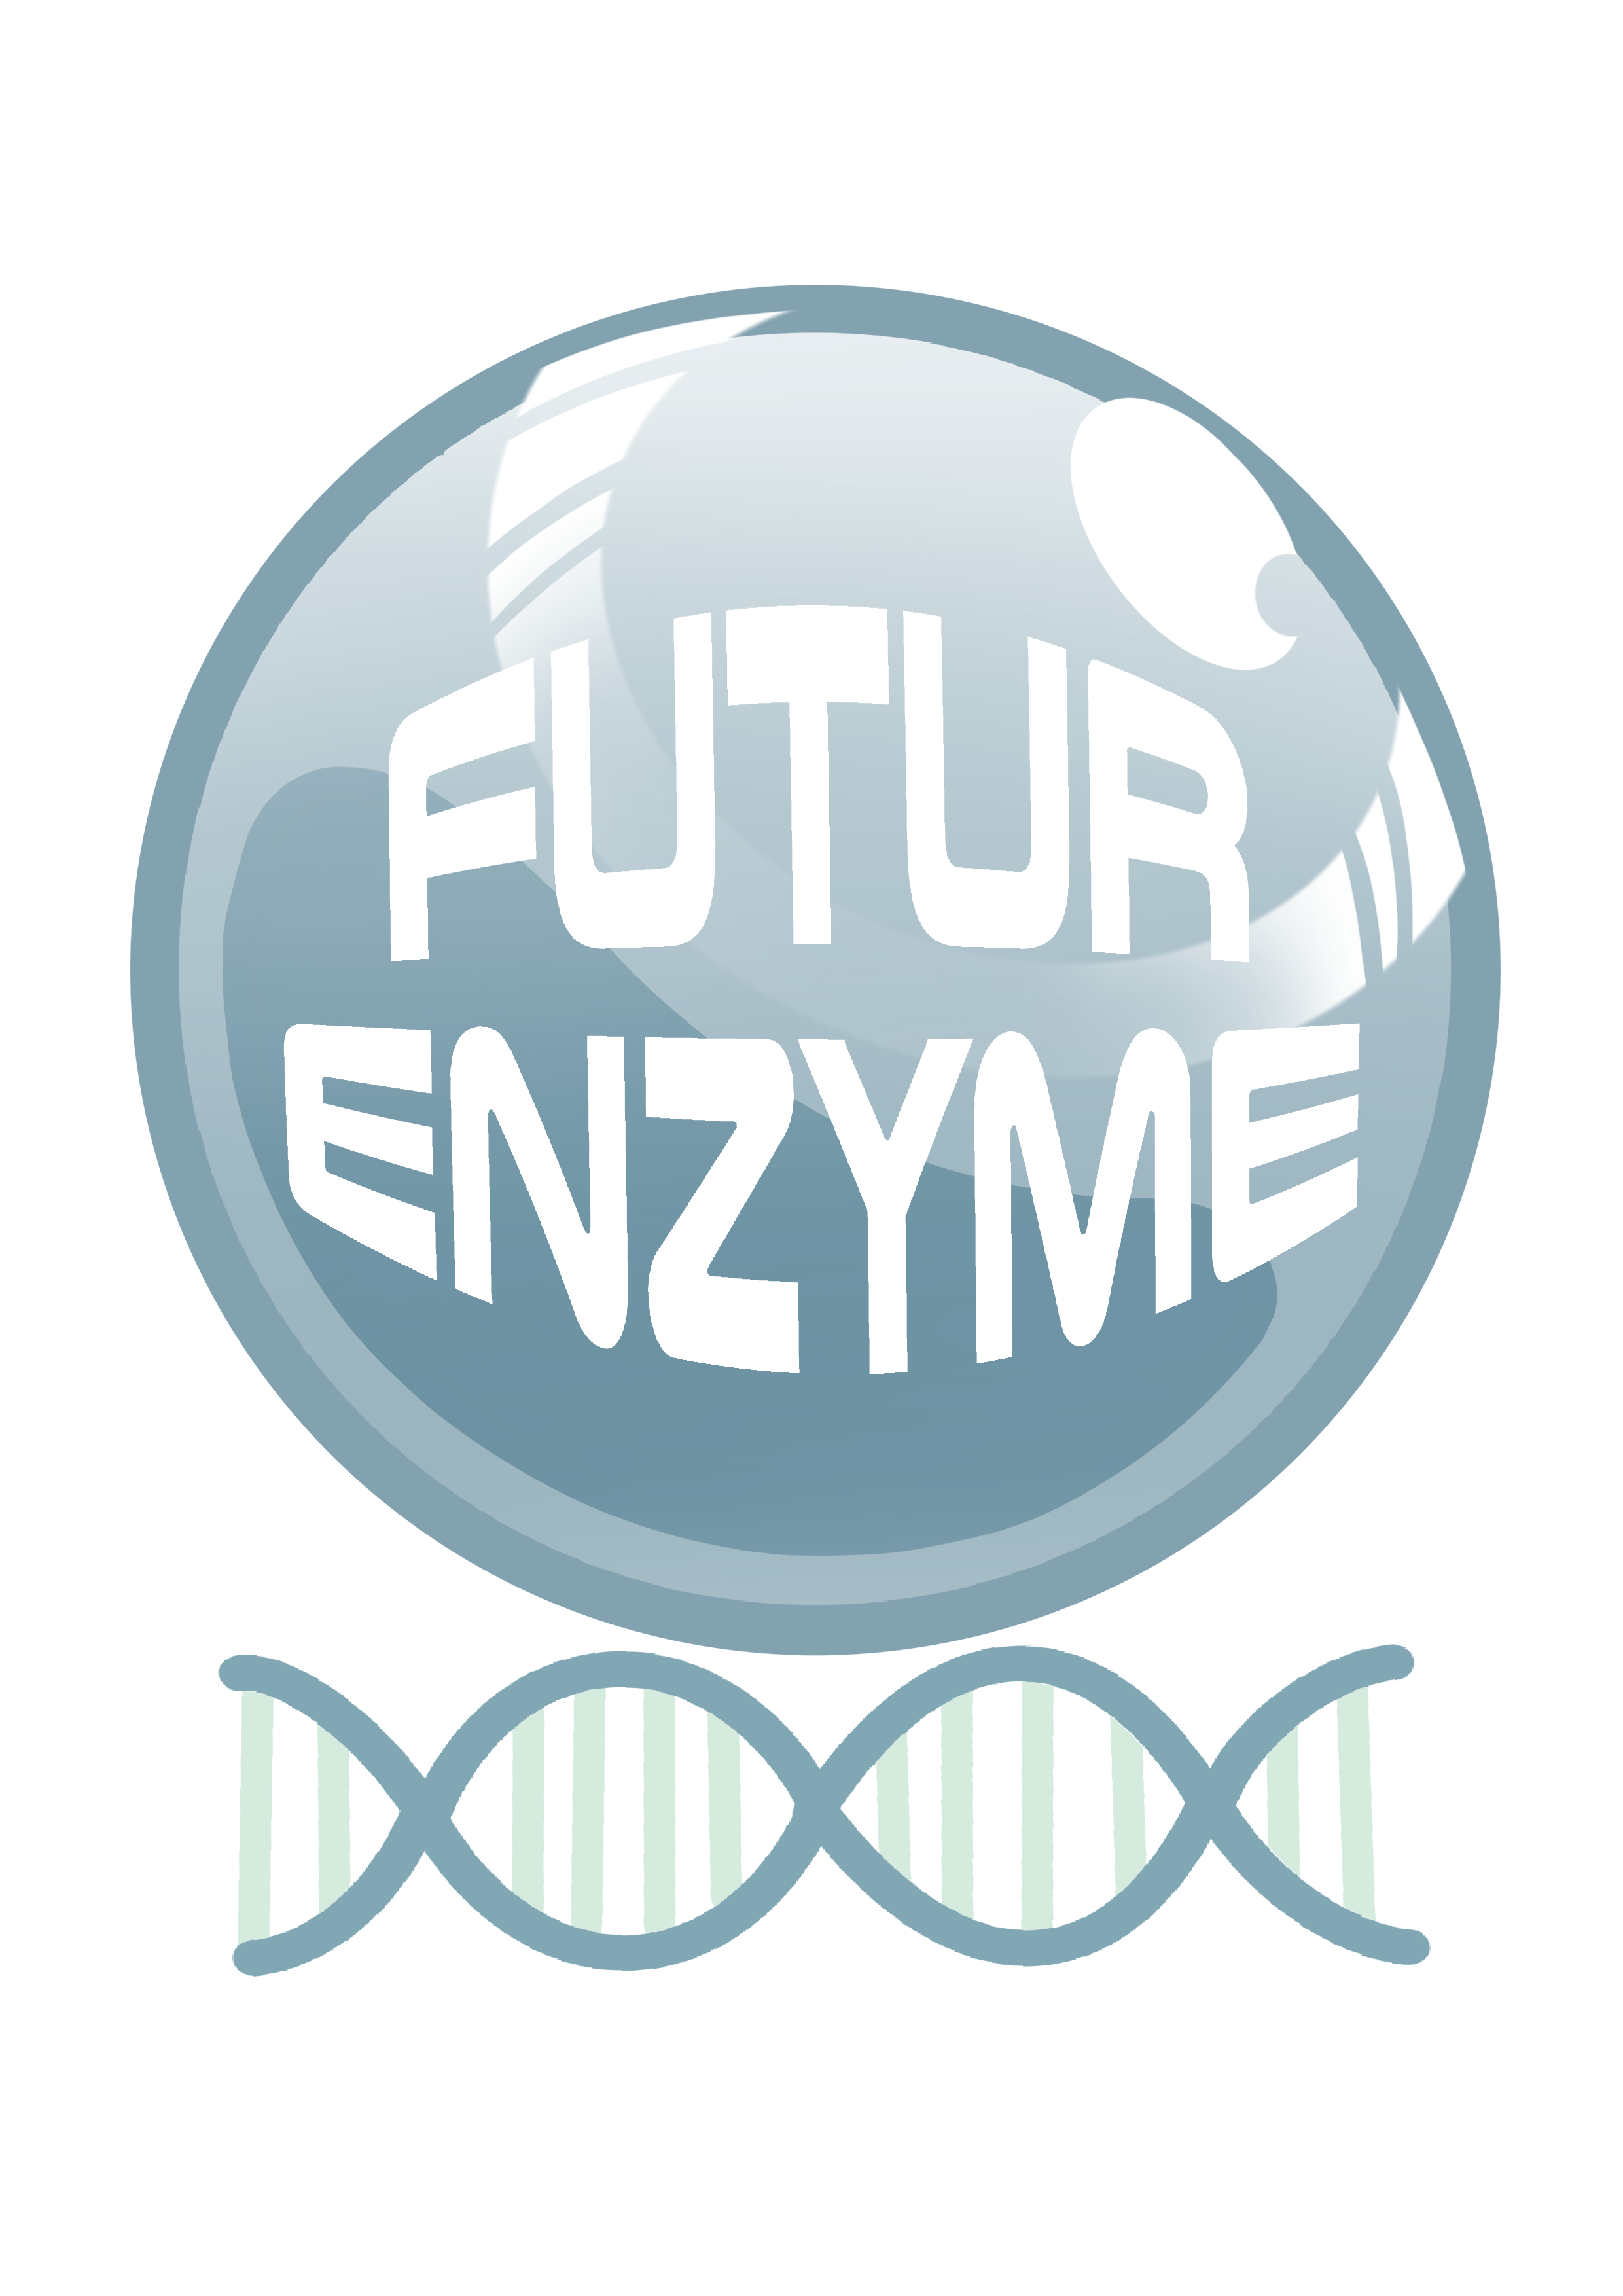 FuturEnzyme Logo Image